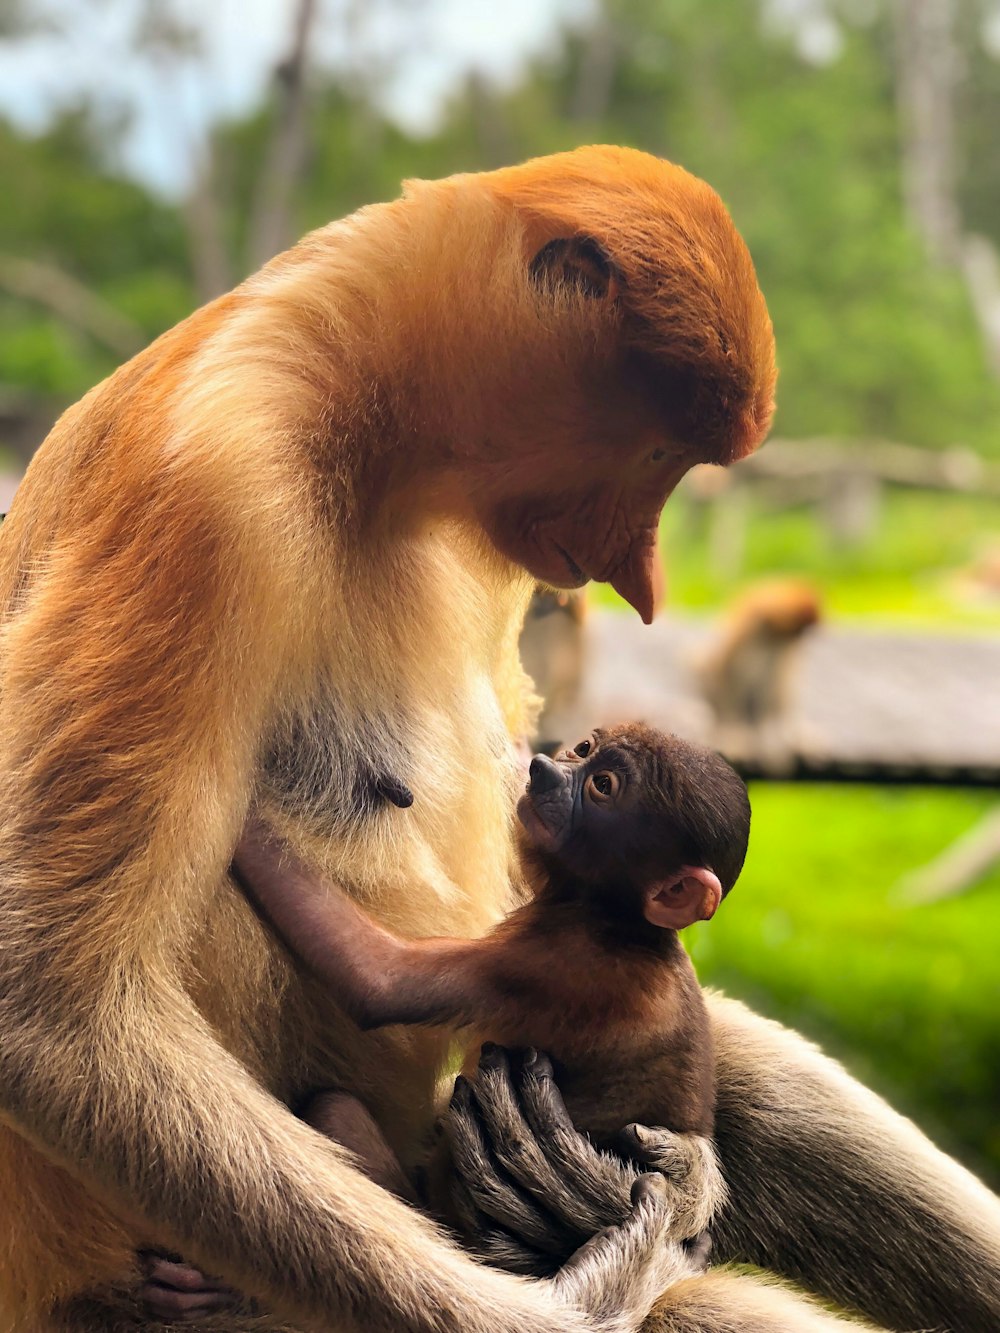 Brauner Primat mit Baby